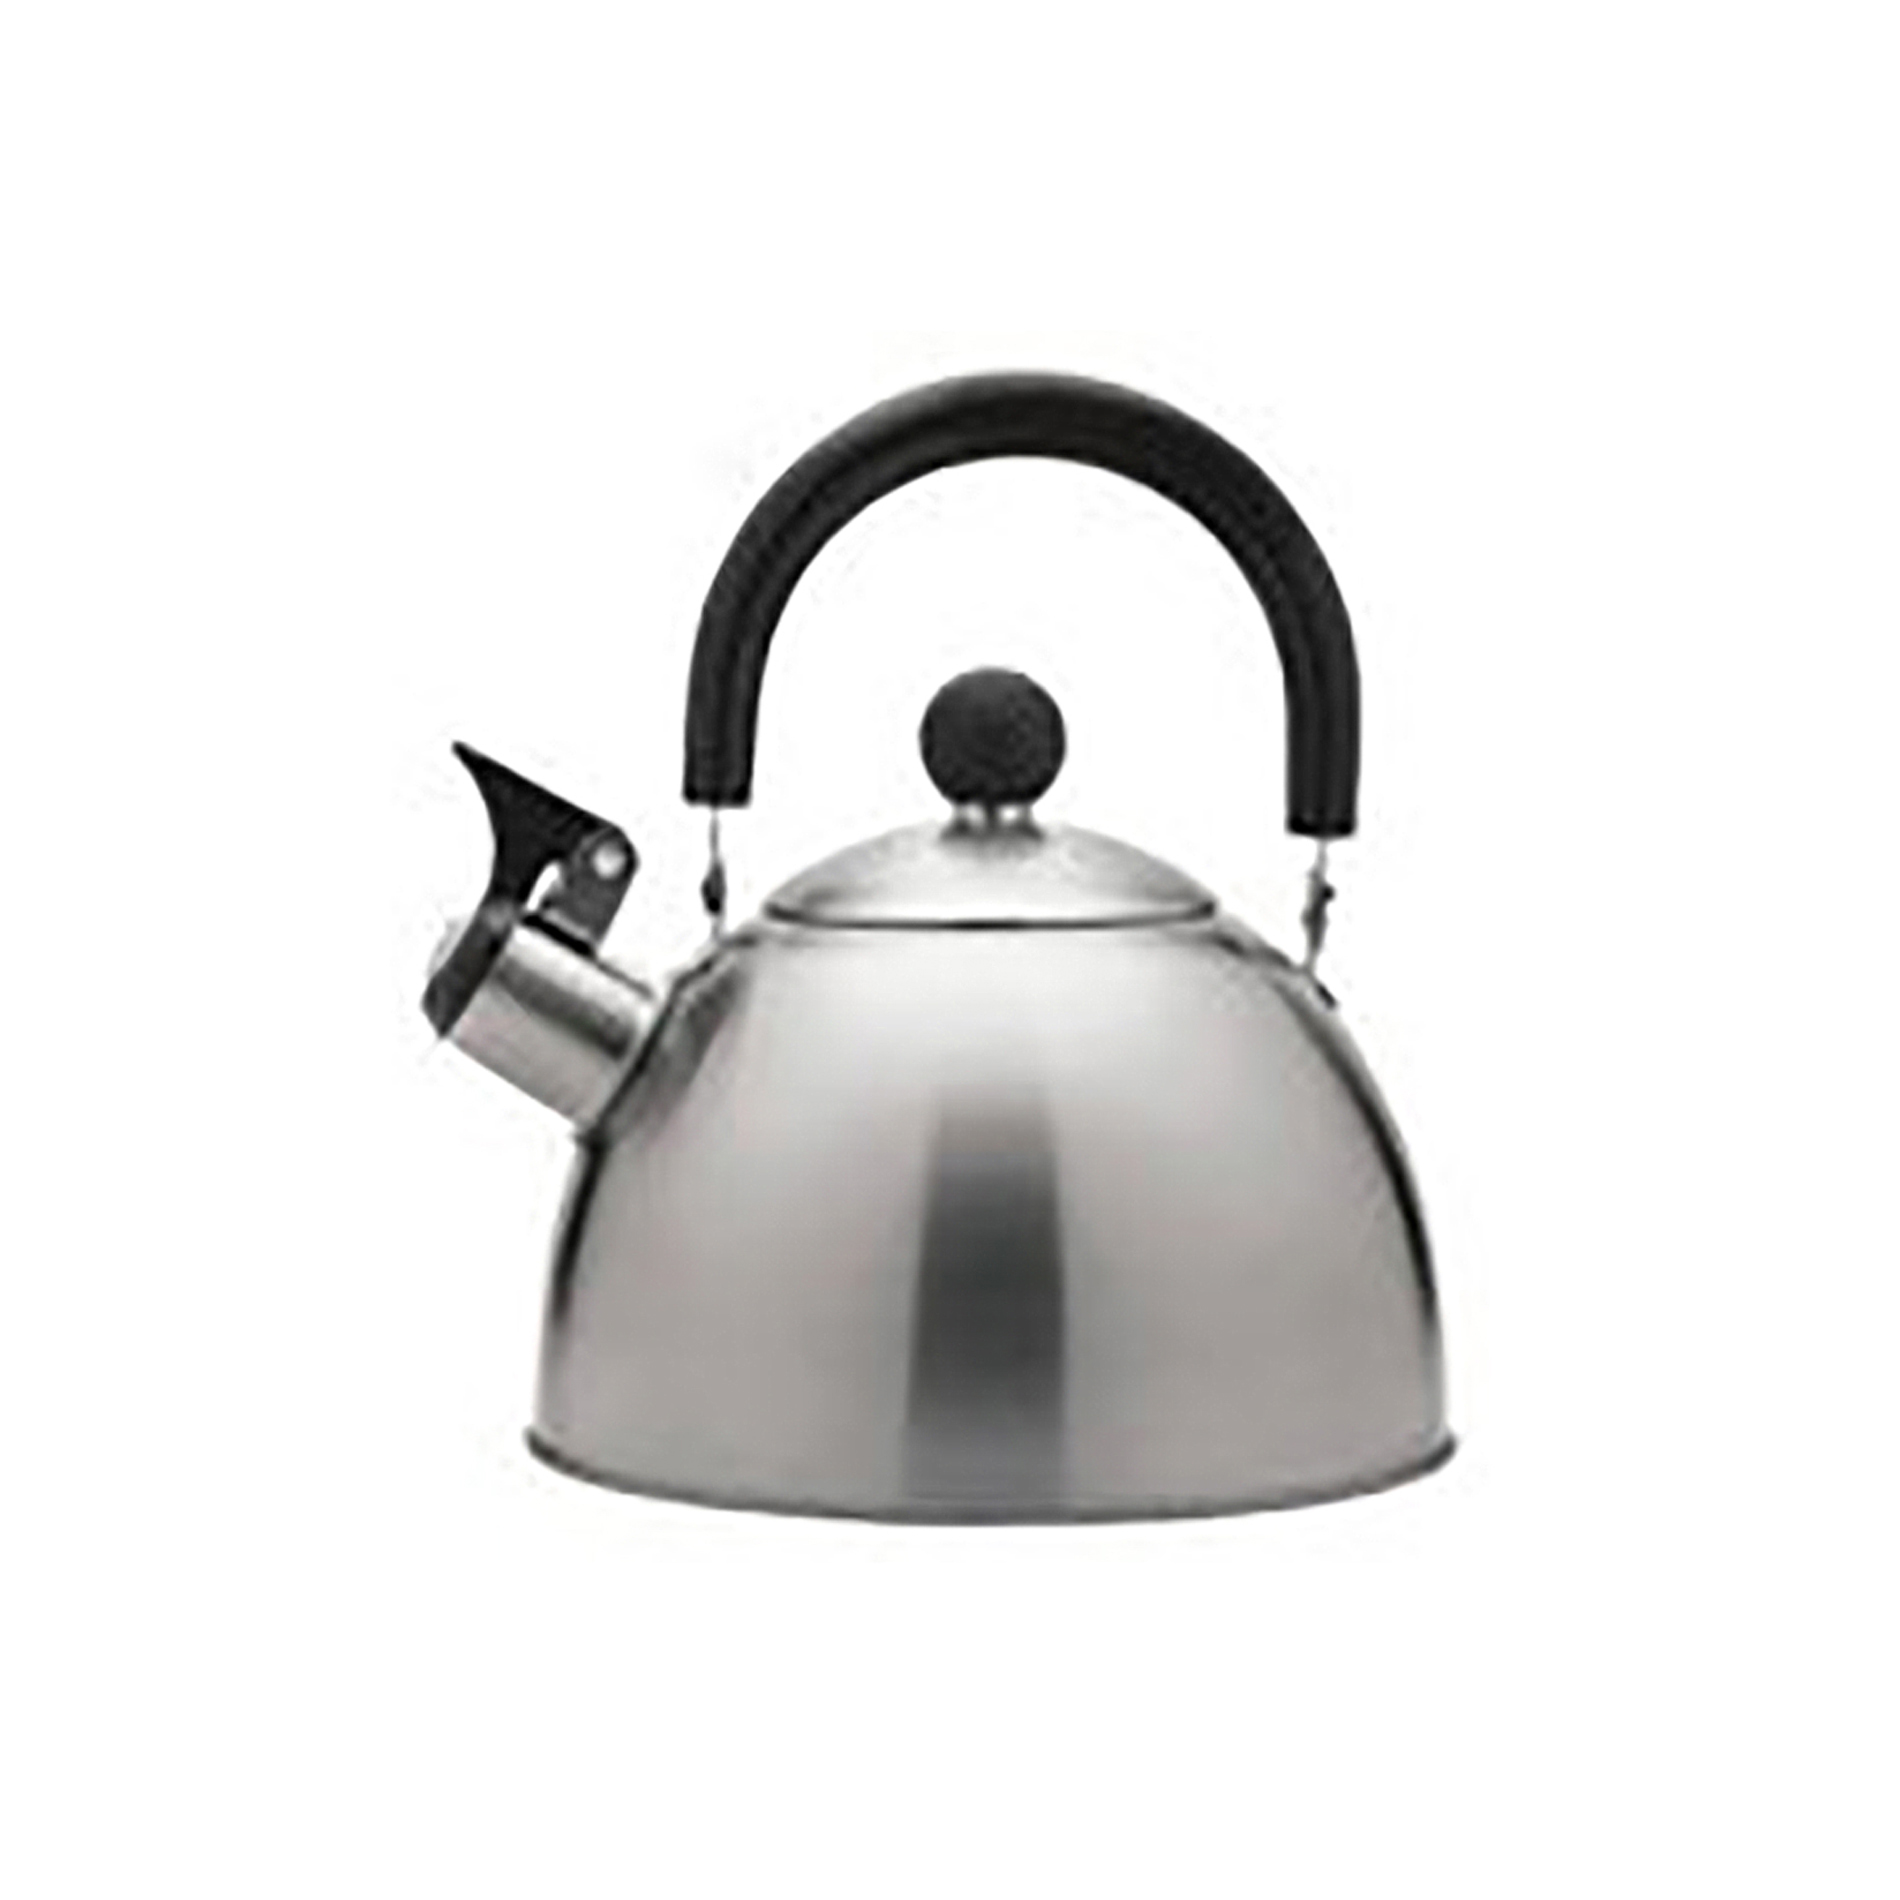 50407 2-Quart Stainless Steel Whistling Tea Kettle